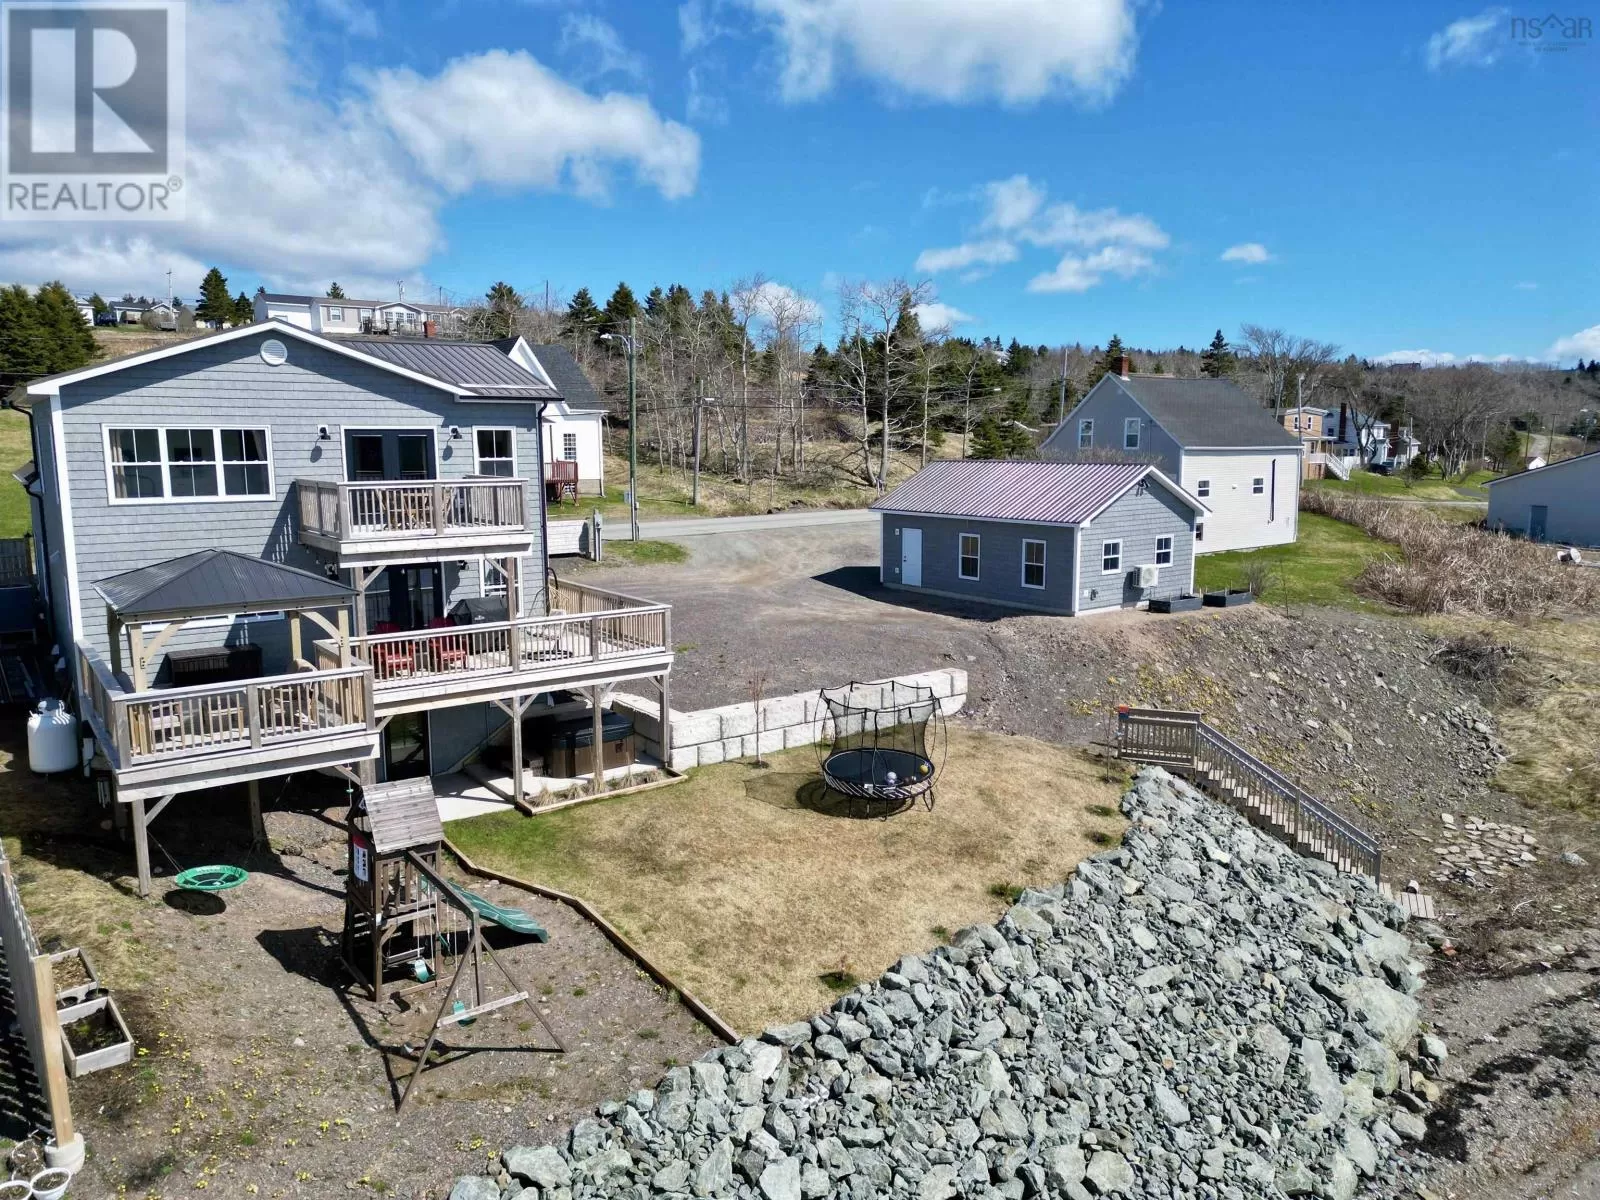 House for rent: 778 Veterans Memorial Drive, Arichat, Nova Scotia B0E 1A0